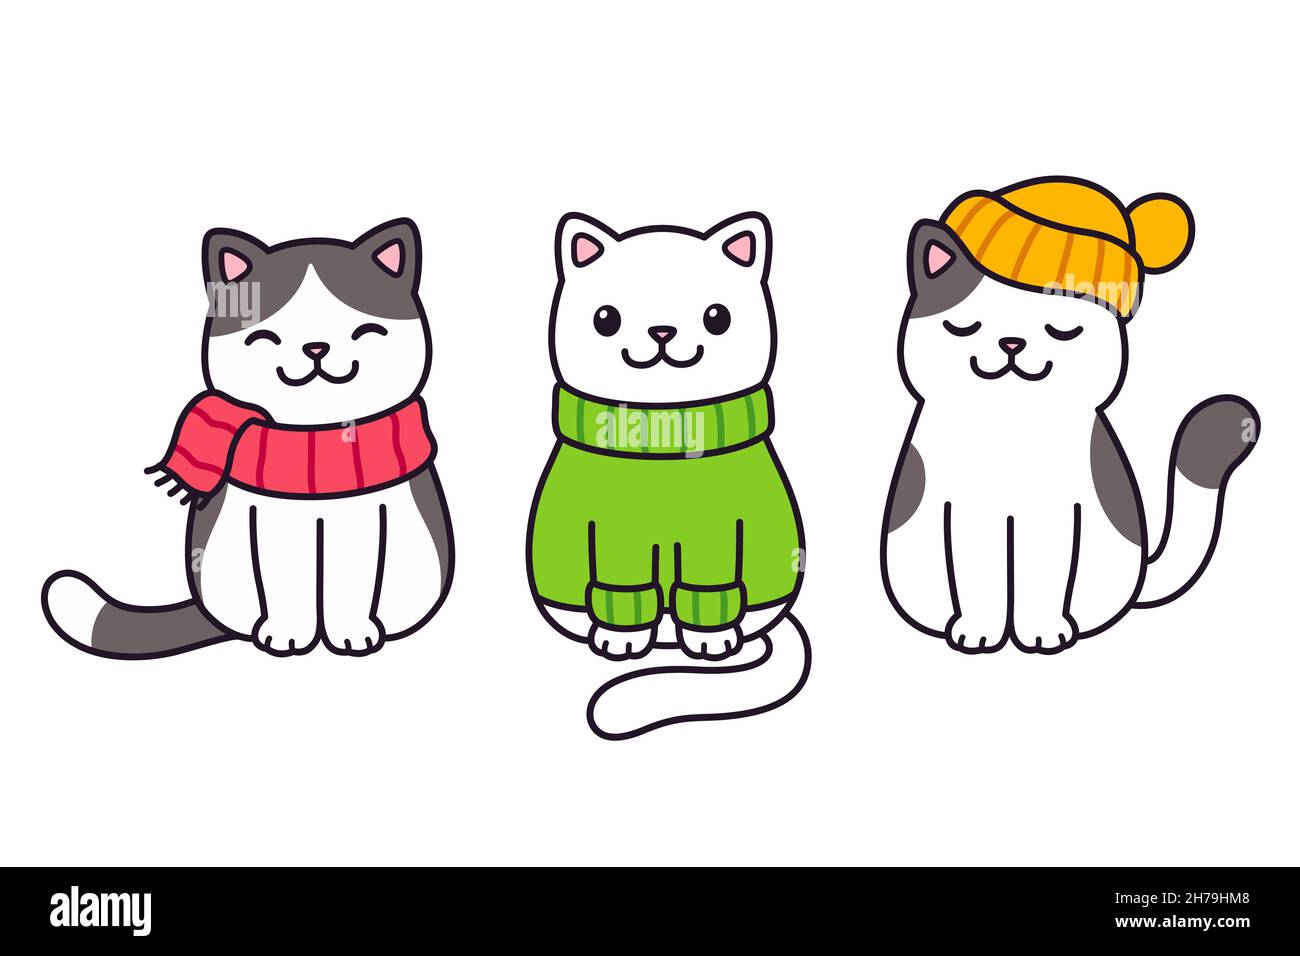 Lindos gatos de dibujos animados en ropa de punto: Suéter, bufanda y sombrero. Tres kawaii gatitos mantener caliente en la temporada de invierno. de imagen de clip vectorial Imagen